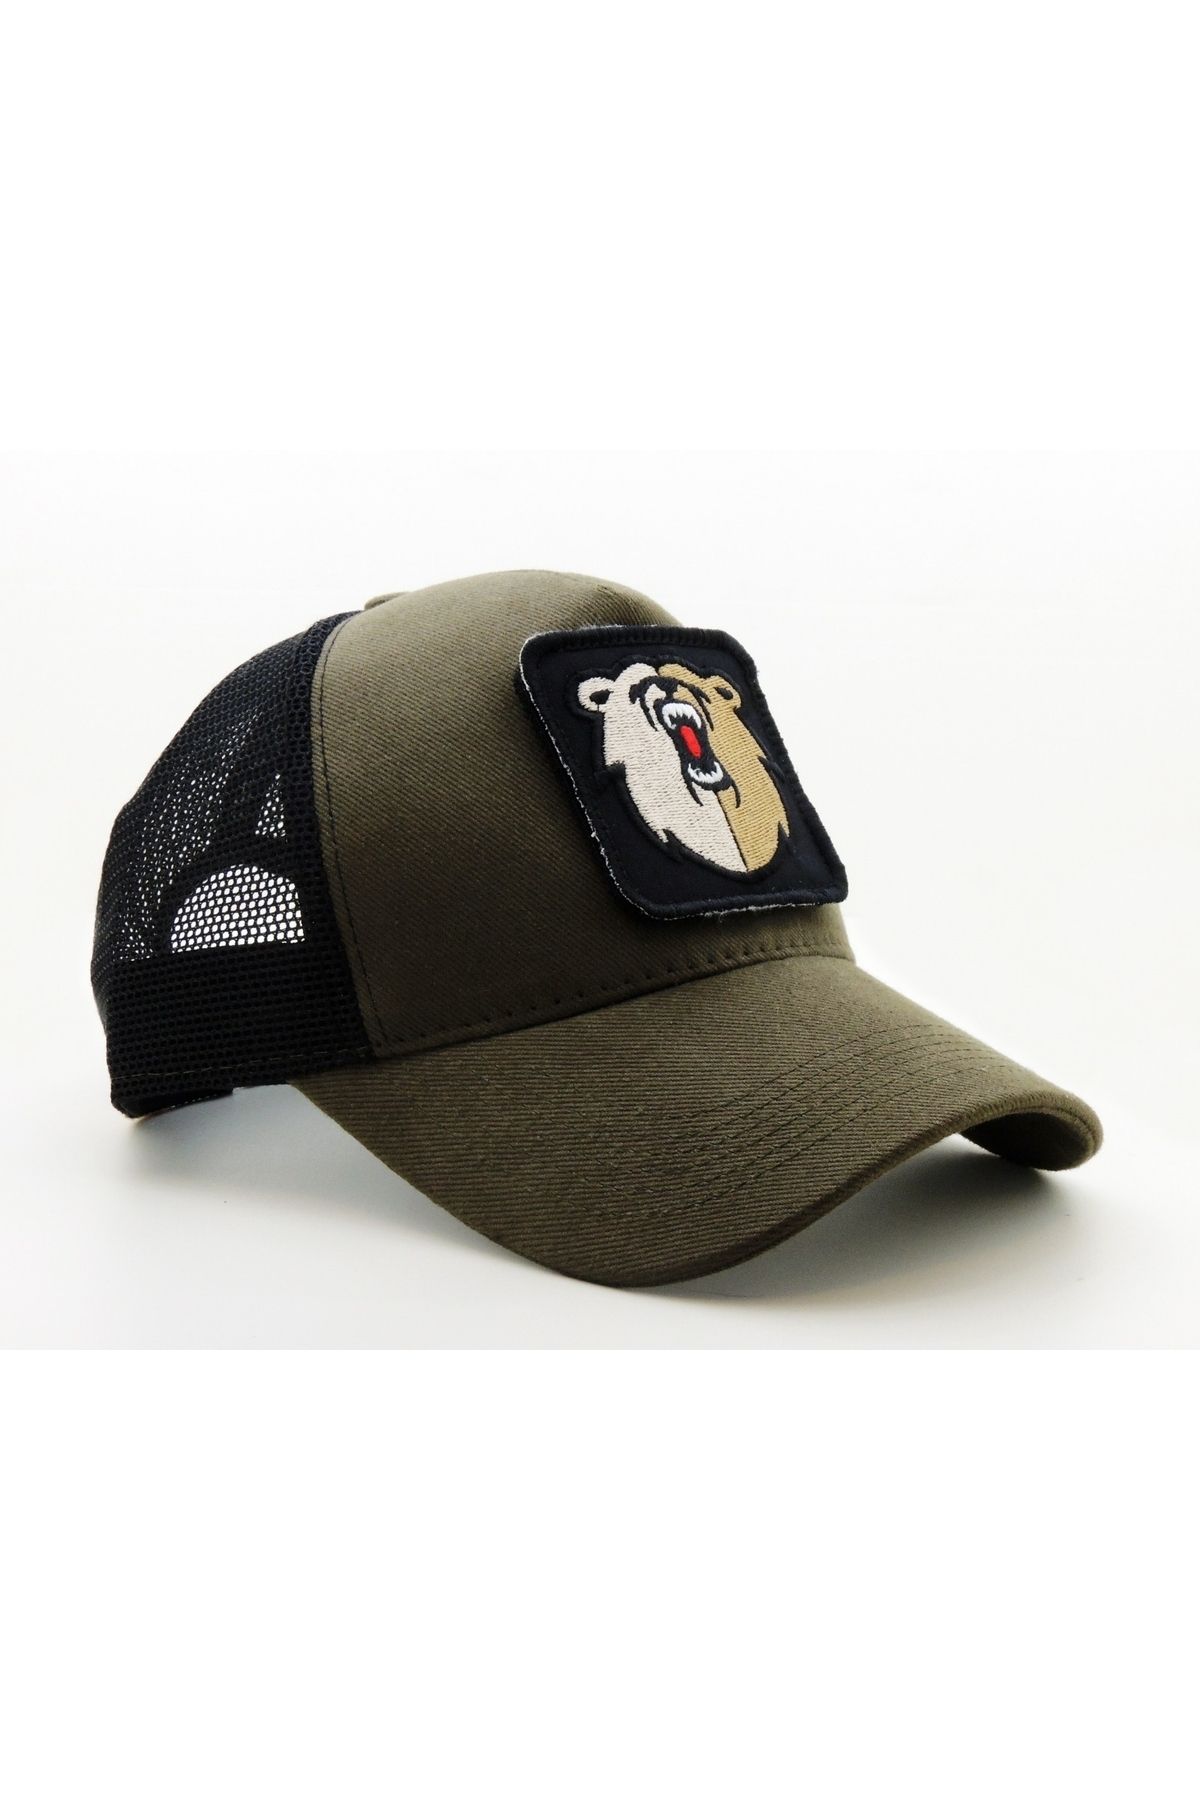 CityGoat Trucker (NAKIŞ) BEAR Logolu Unisex Haki-Siyah Şapka (CAP)